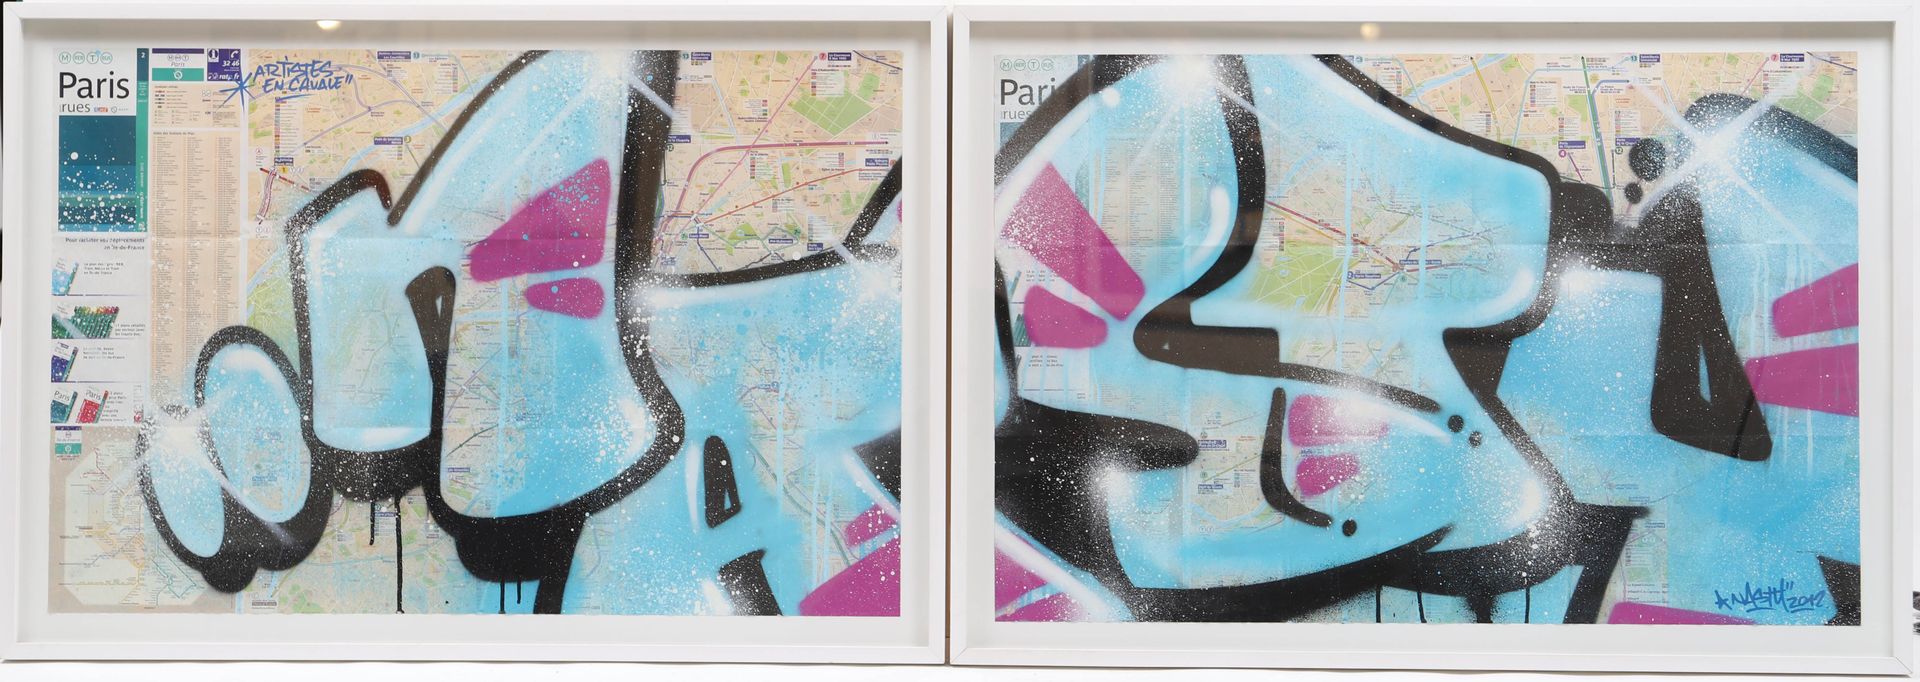 Null Nasty (geboren 1975)

Französischer Street Artist 

Tag auf Maps der Parise&hellip;